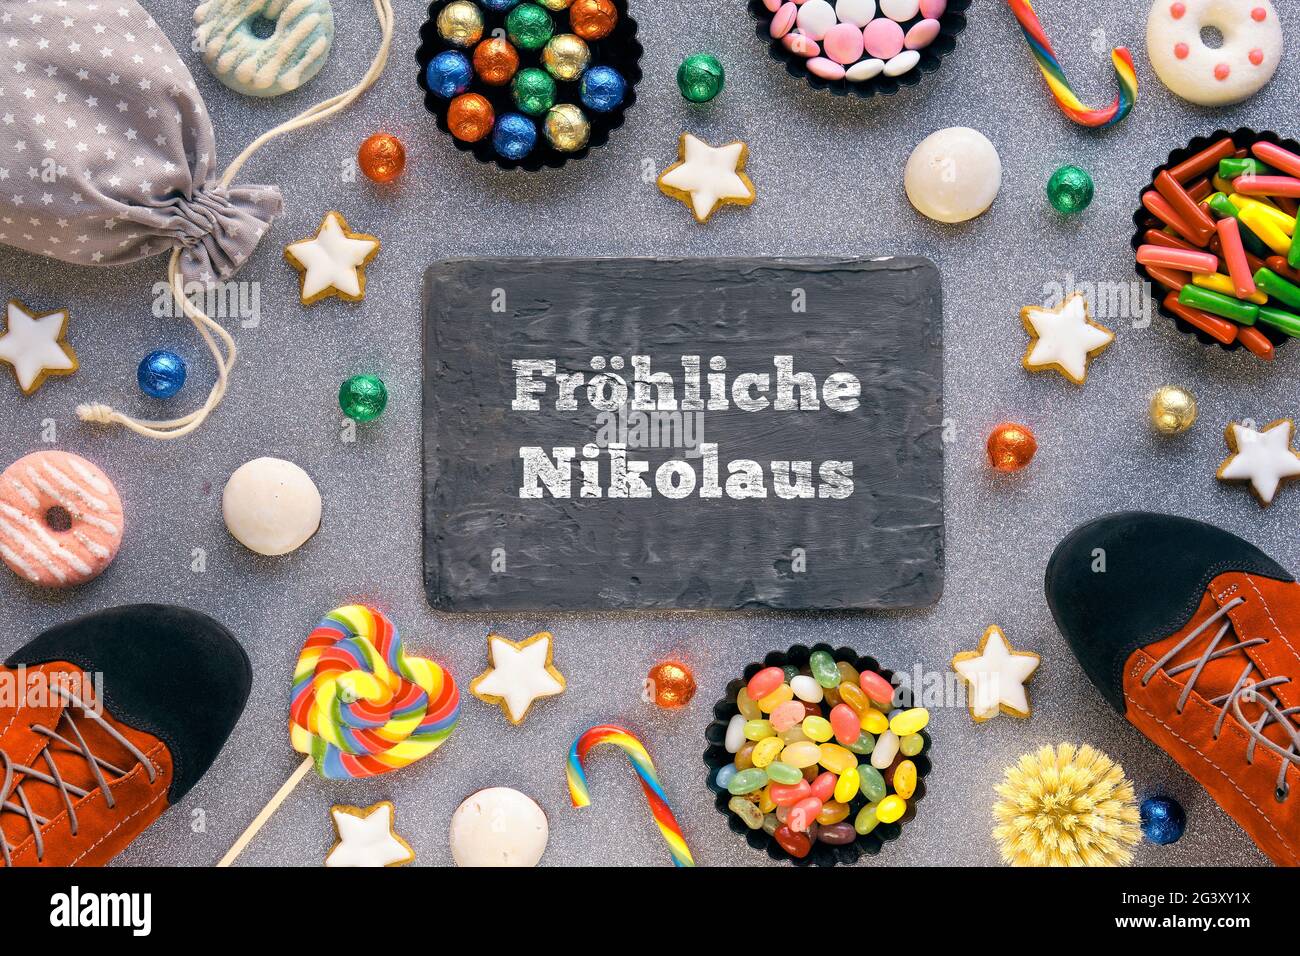 Text Frohliche Nikolaus bedeutet Happy St Nicolas Day. Traditioneller Feiertag in Deutschland und Westeuropa am 6. Dezember. Verschiedene Süßigkeiten, Süßigkeiten, Kekse Stockfoto